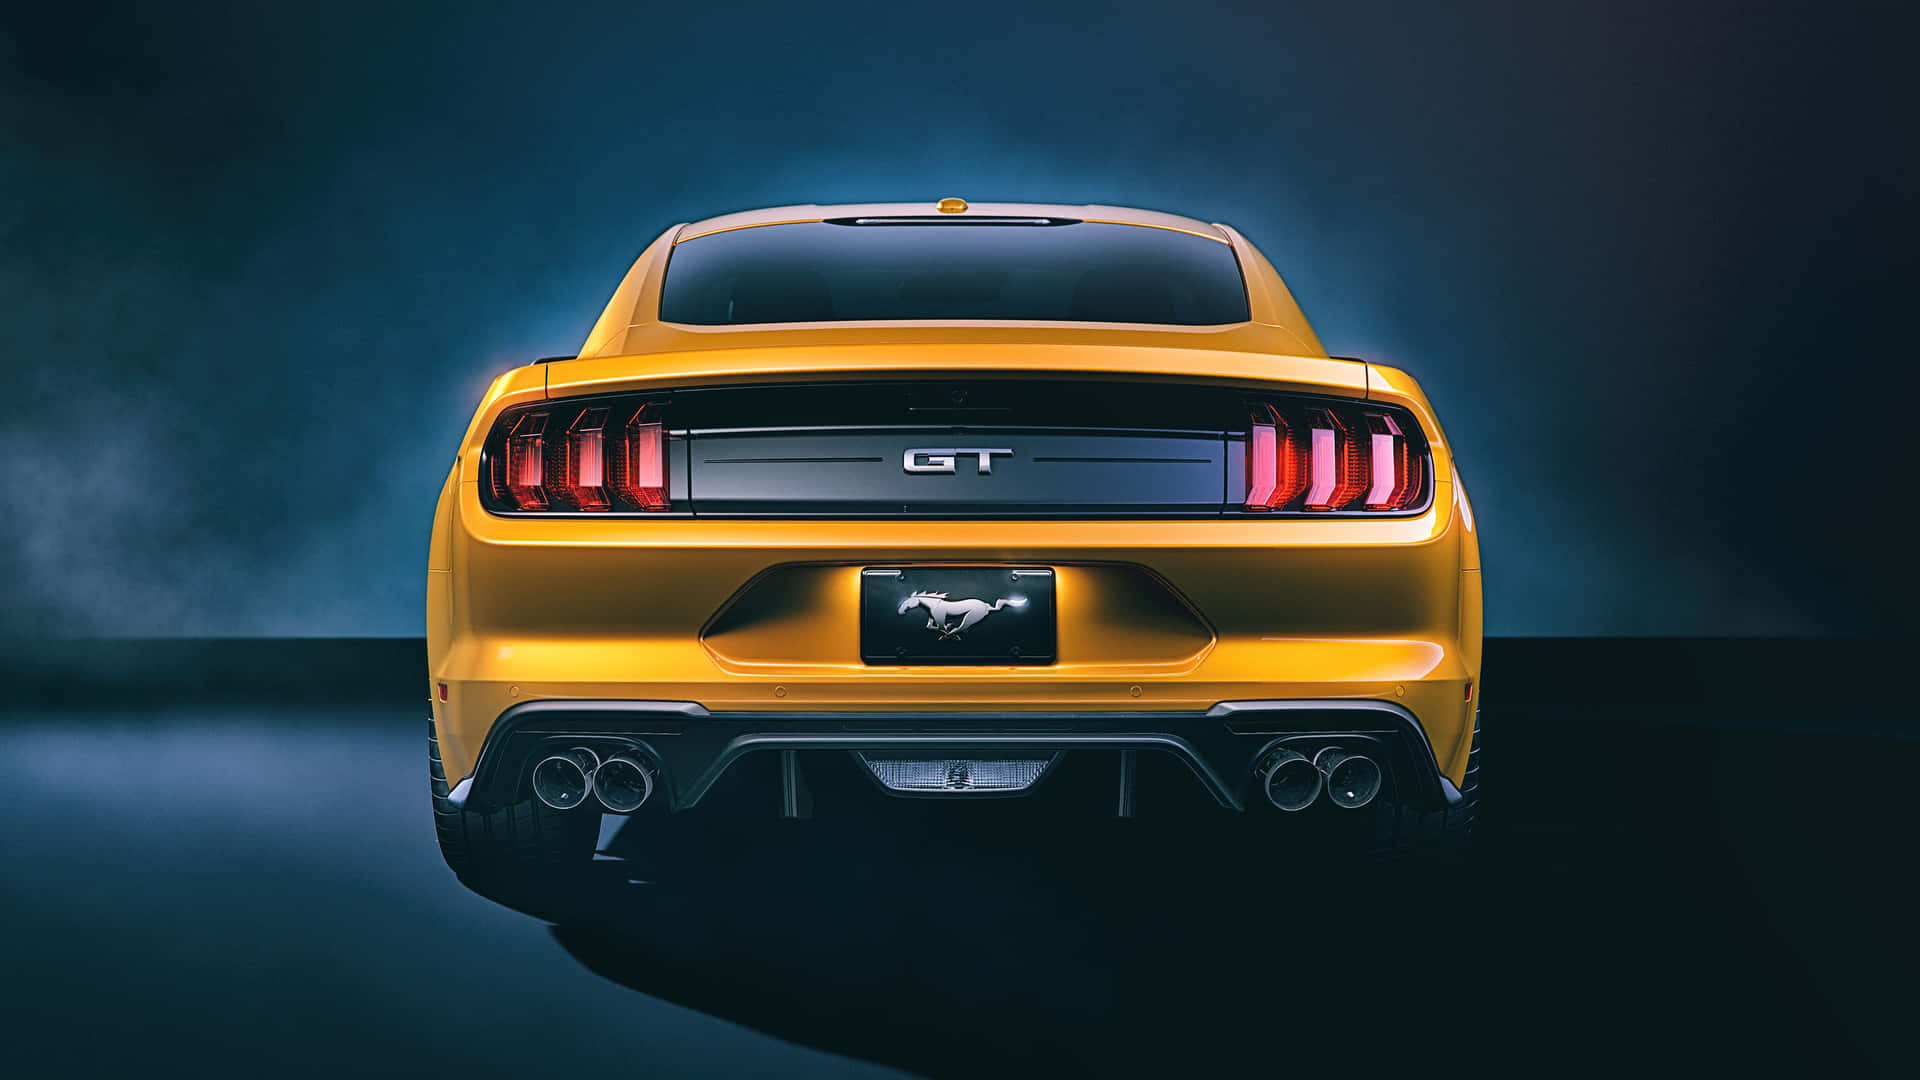 Rückansichteines Ford Mustang 2018 Gt-modells Wallpaper